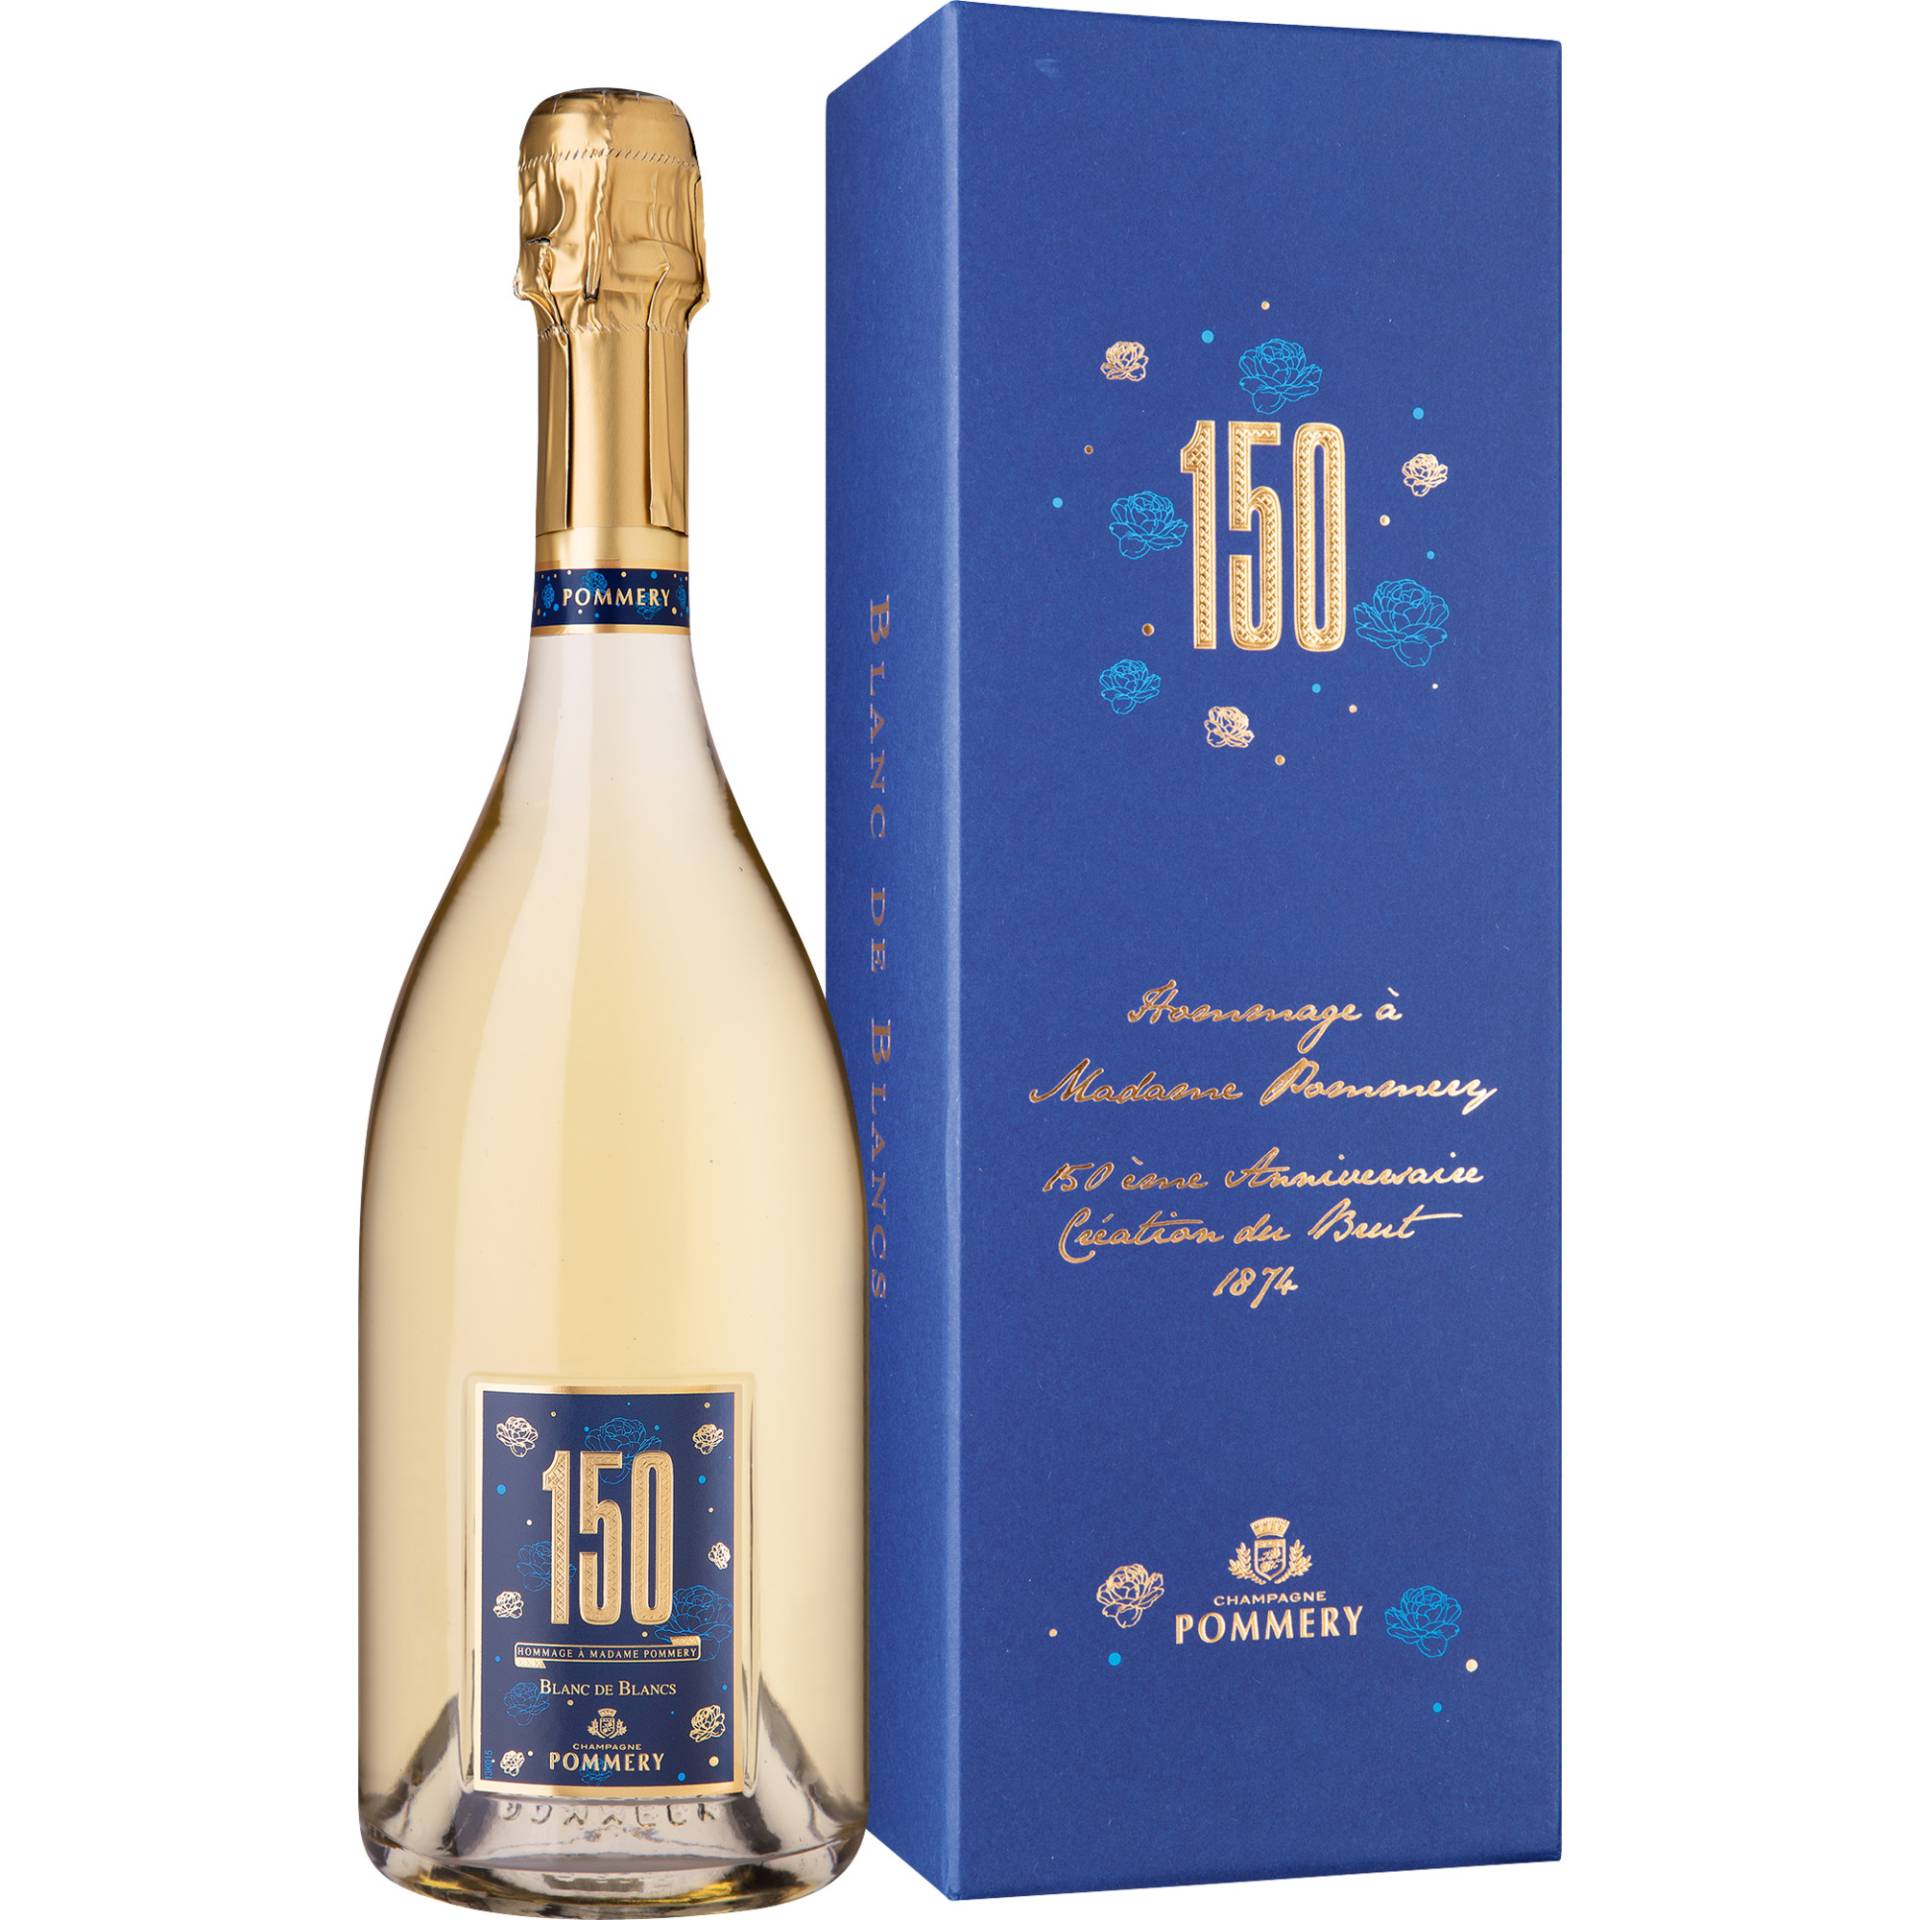 Champagne Pommery 150, Brut, Blanc de Blancs, Champagne AC, Champagne, Schaumwein von Vranken-Pommery - 51689 Reims - France